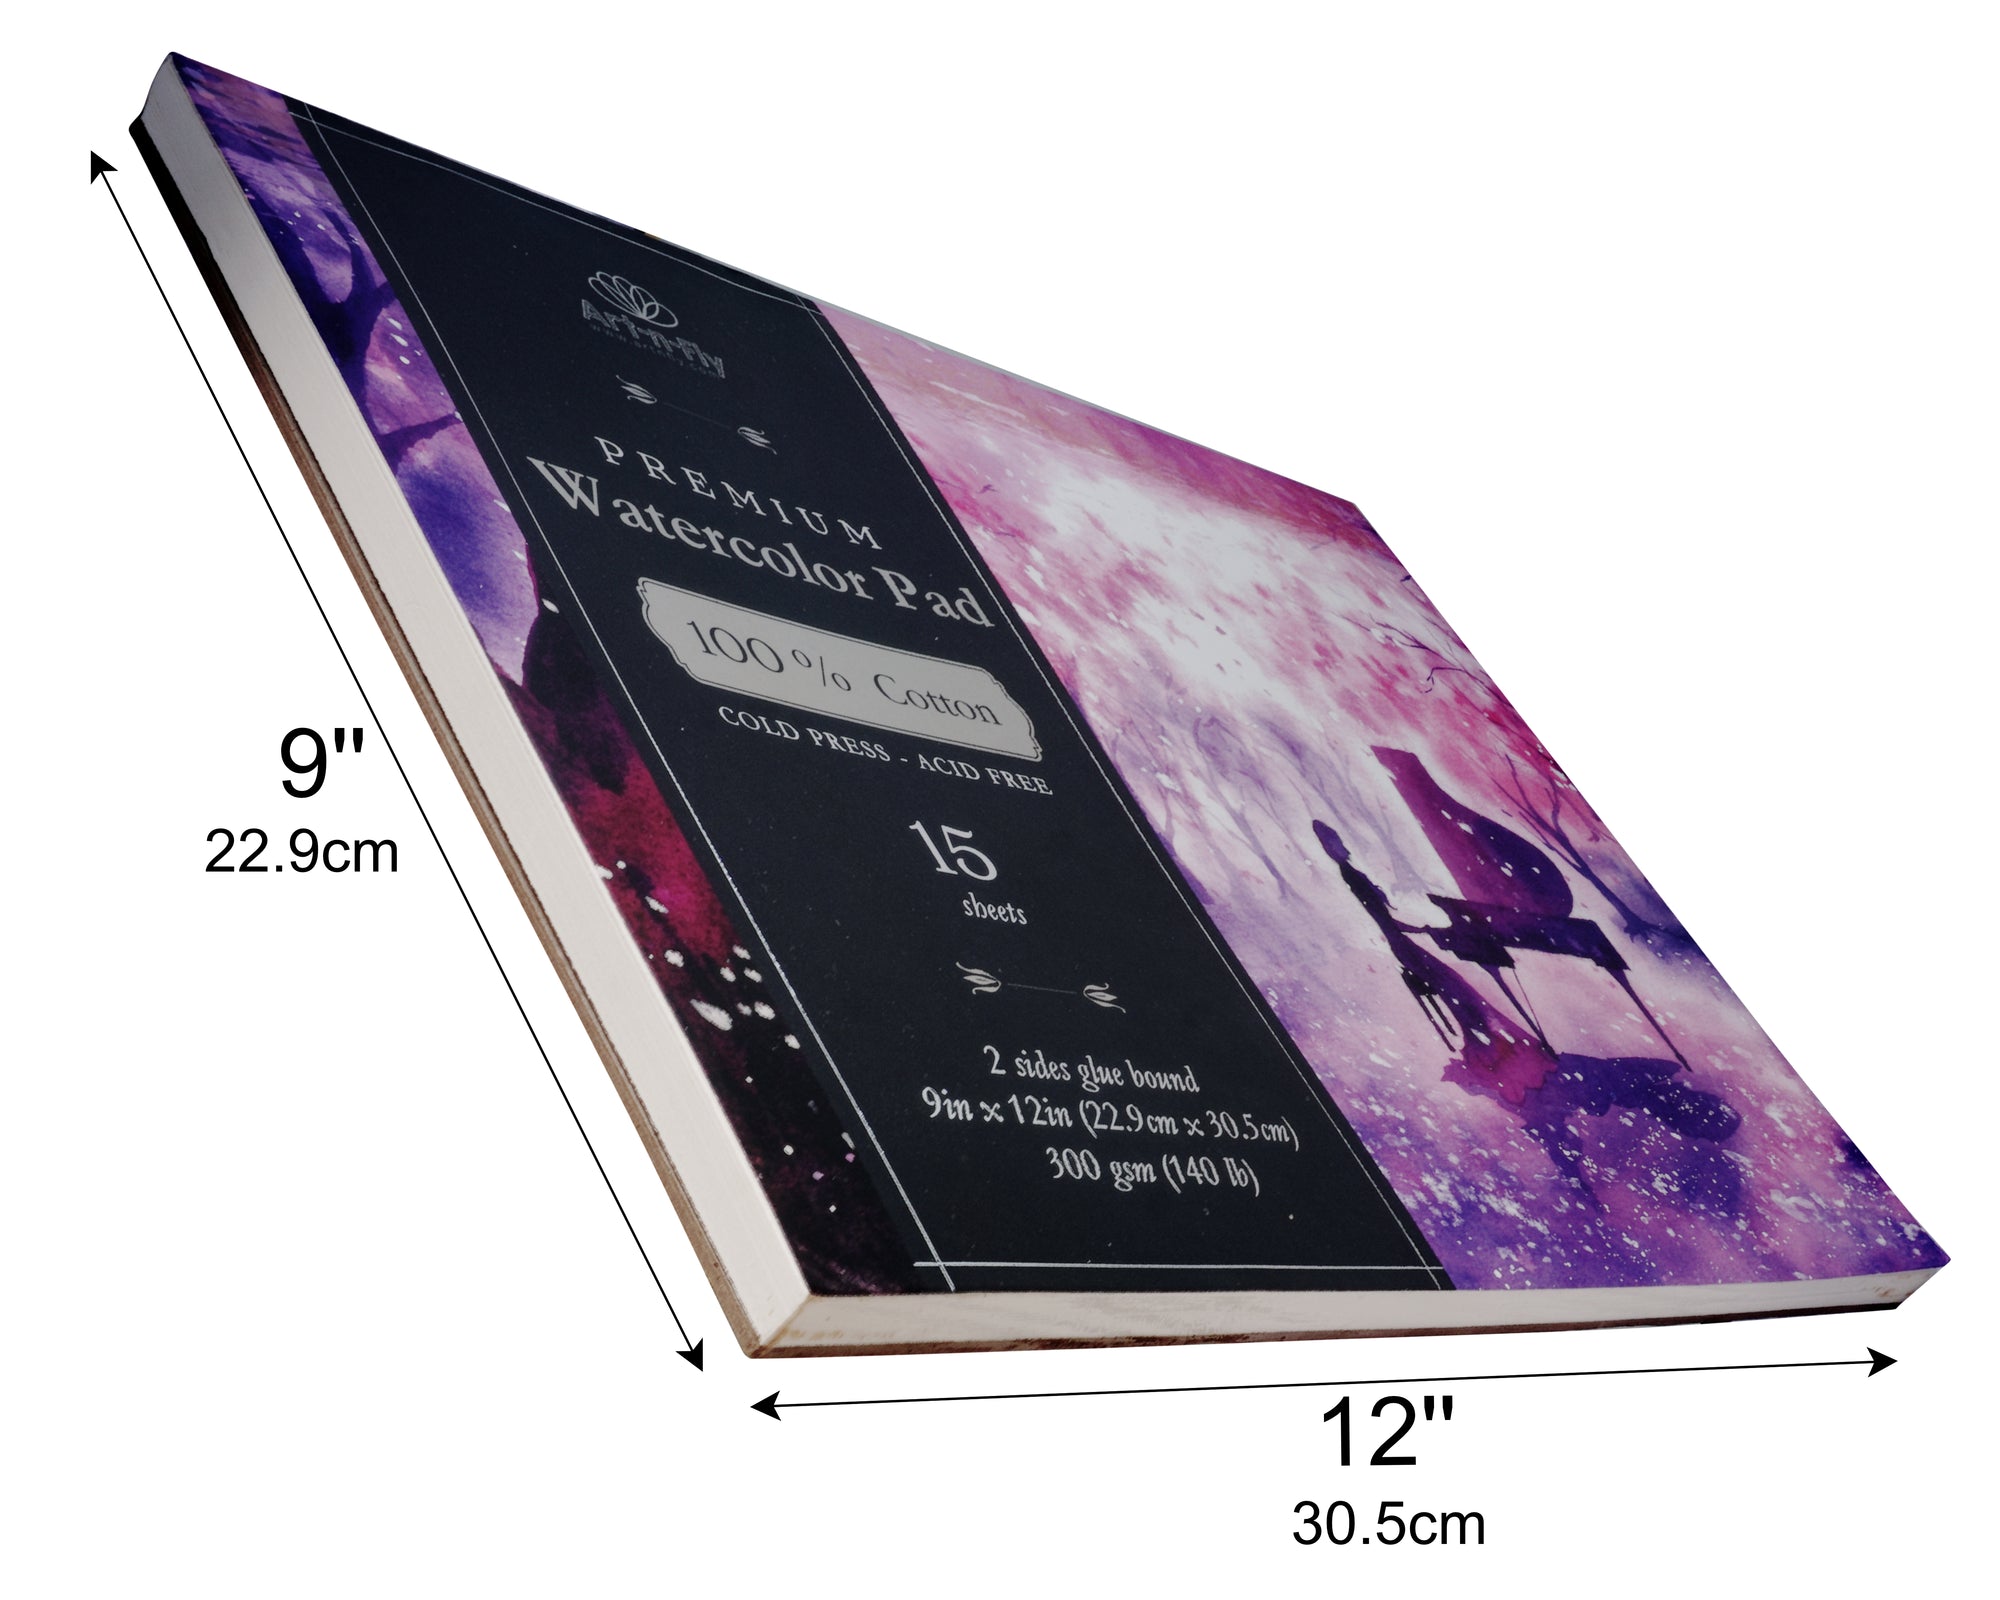 Art Philosophy 6×6 Watercolor Paper Pad – 24 sheets, 140 lb (300 gsm) 100%  cotton cold press – Art Philosophy®